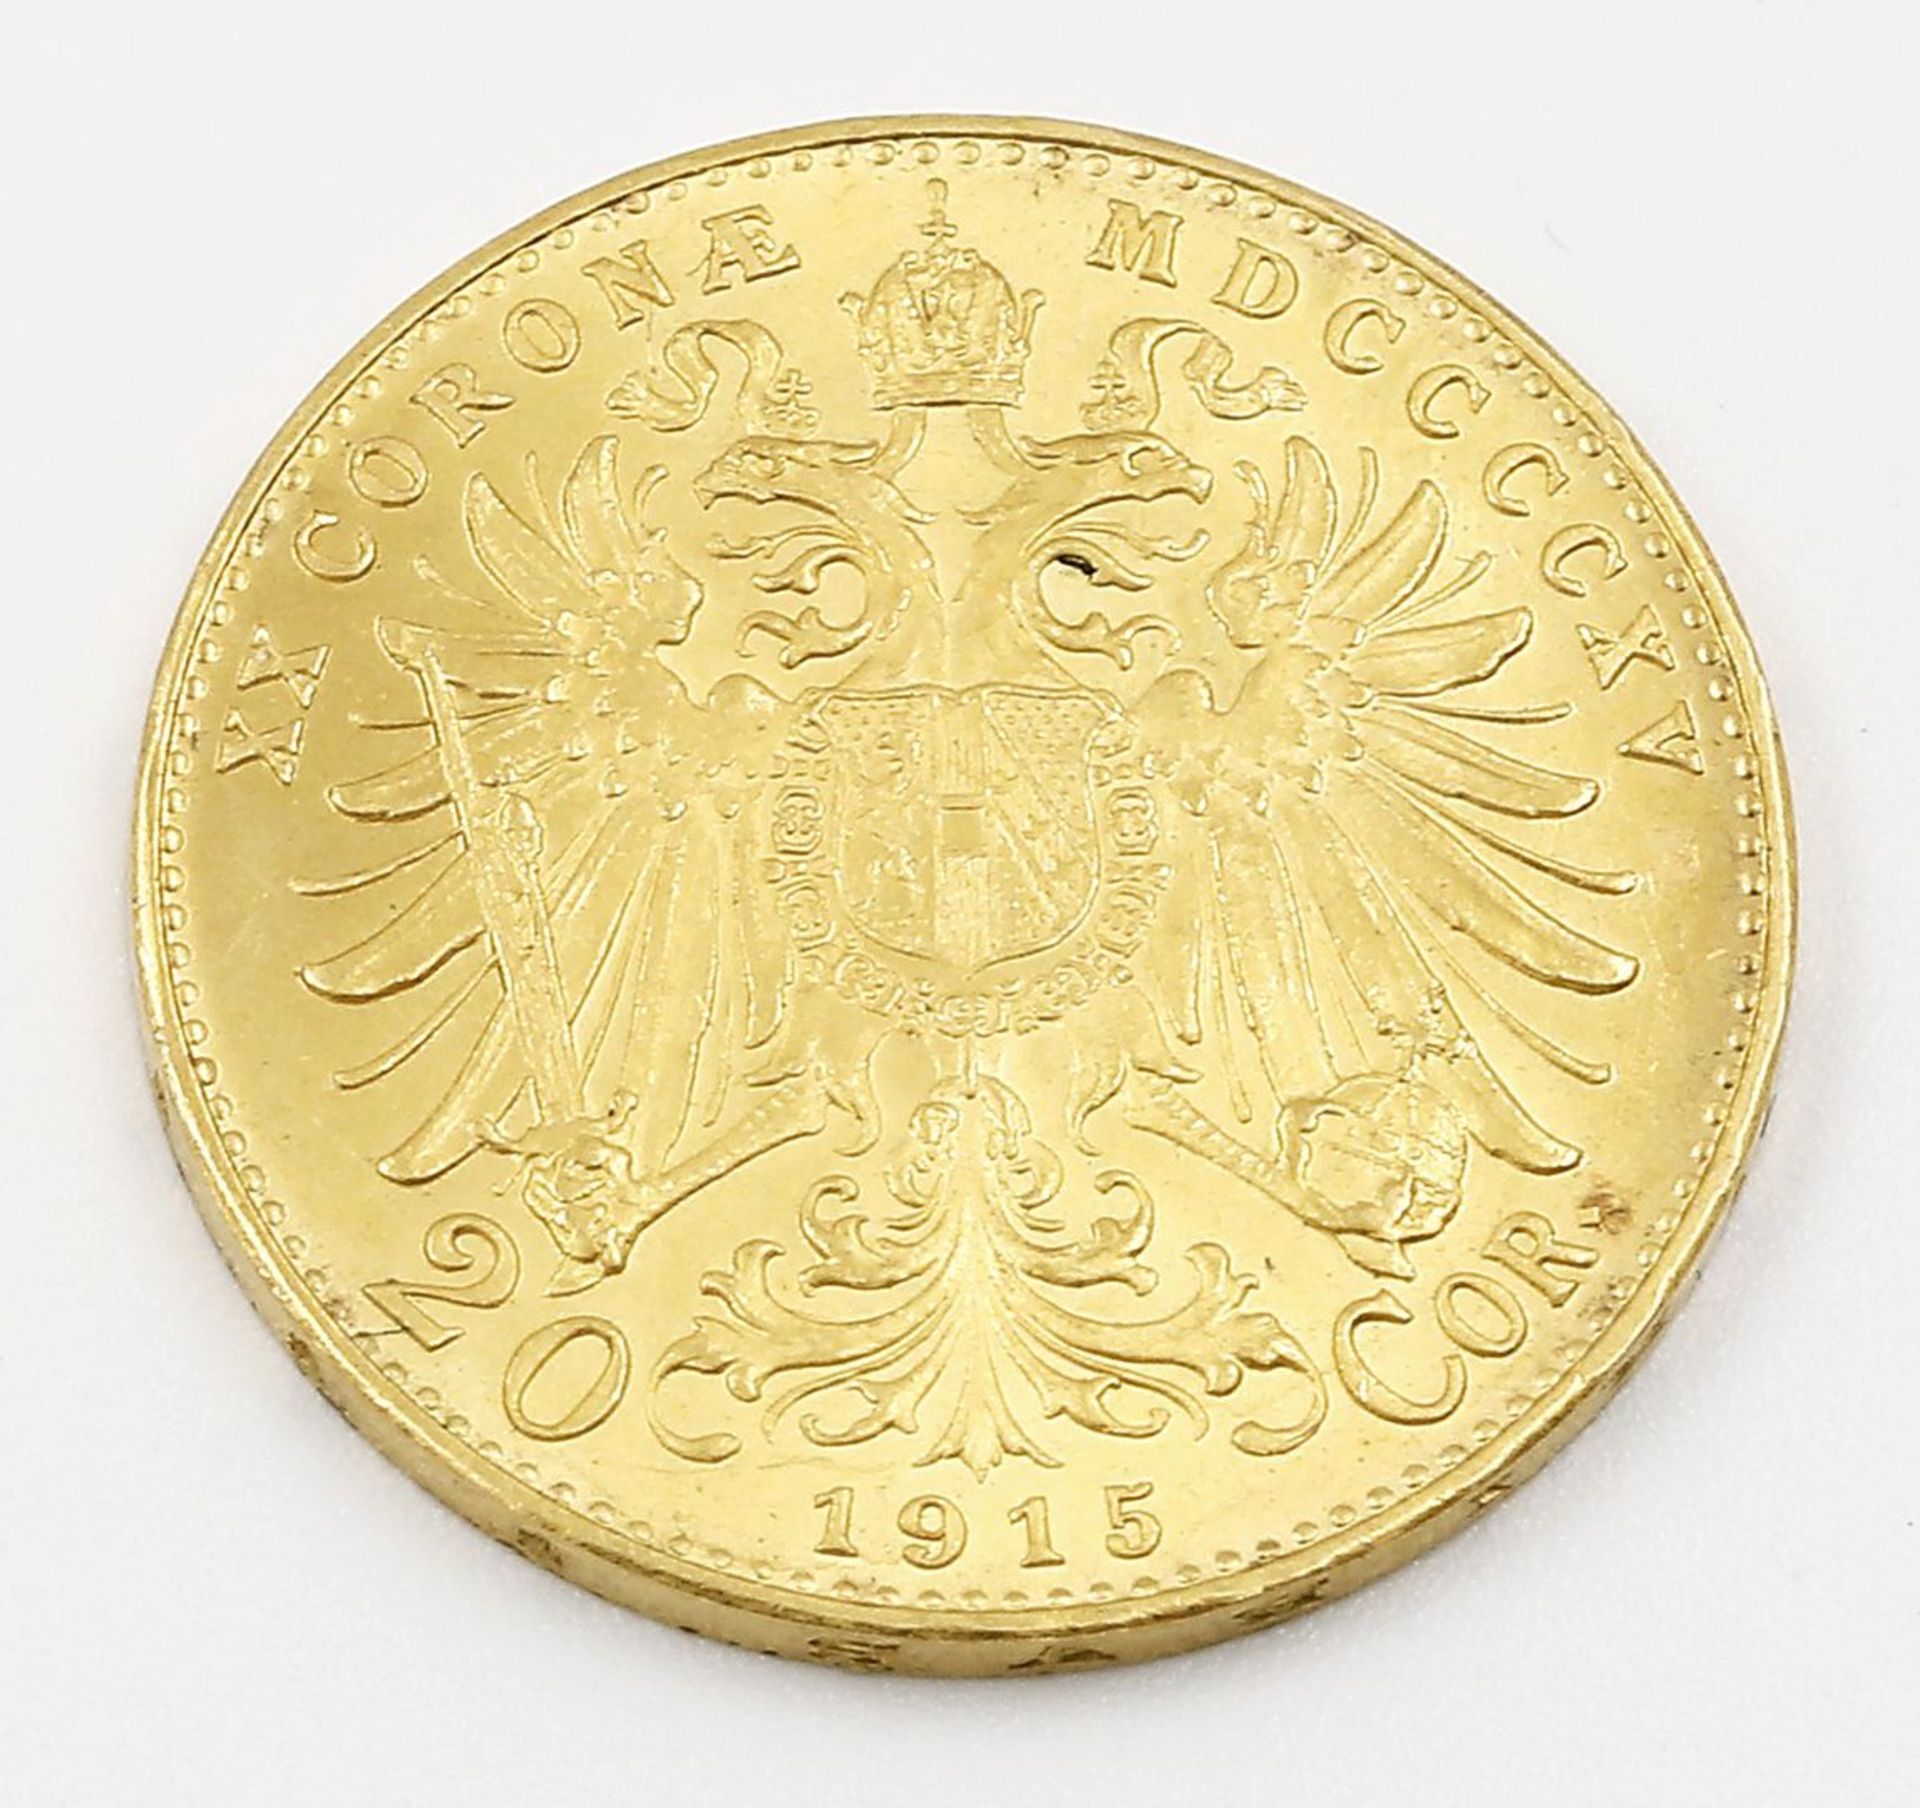 Österreich, 20 Kronen 1915 (NP). - Bild 2 aus 2